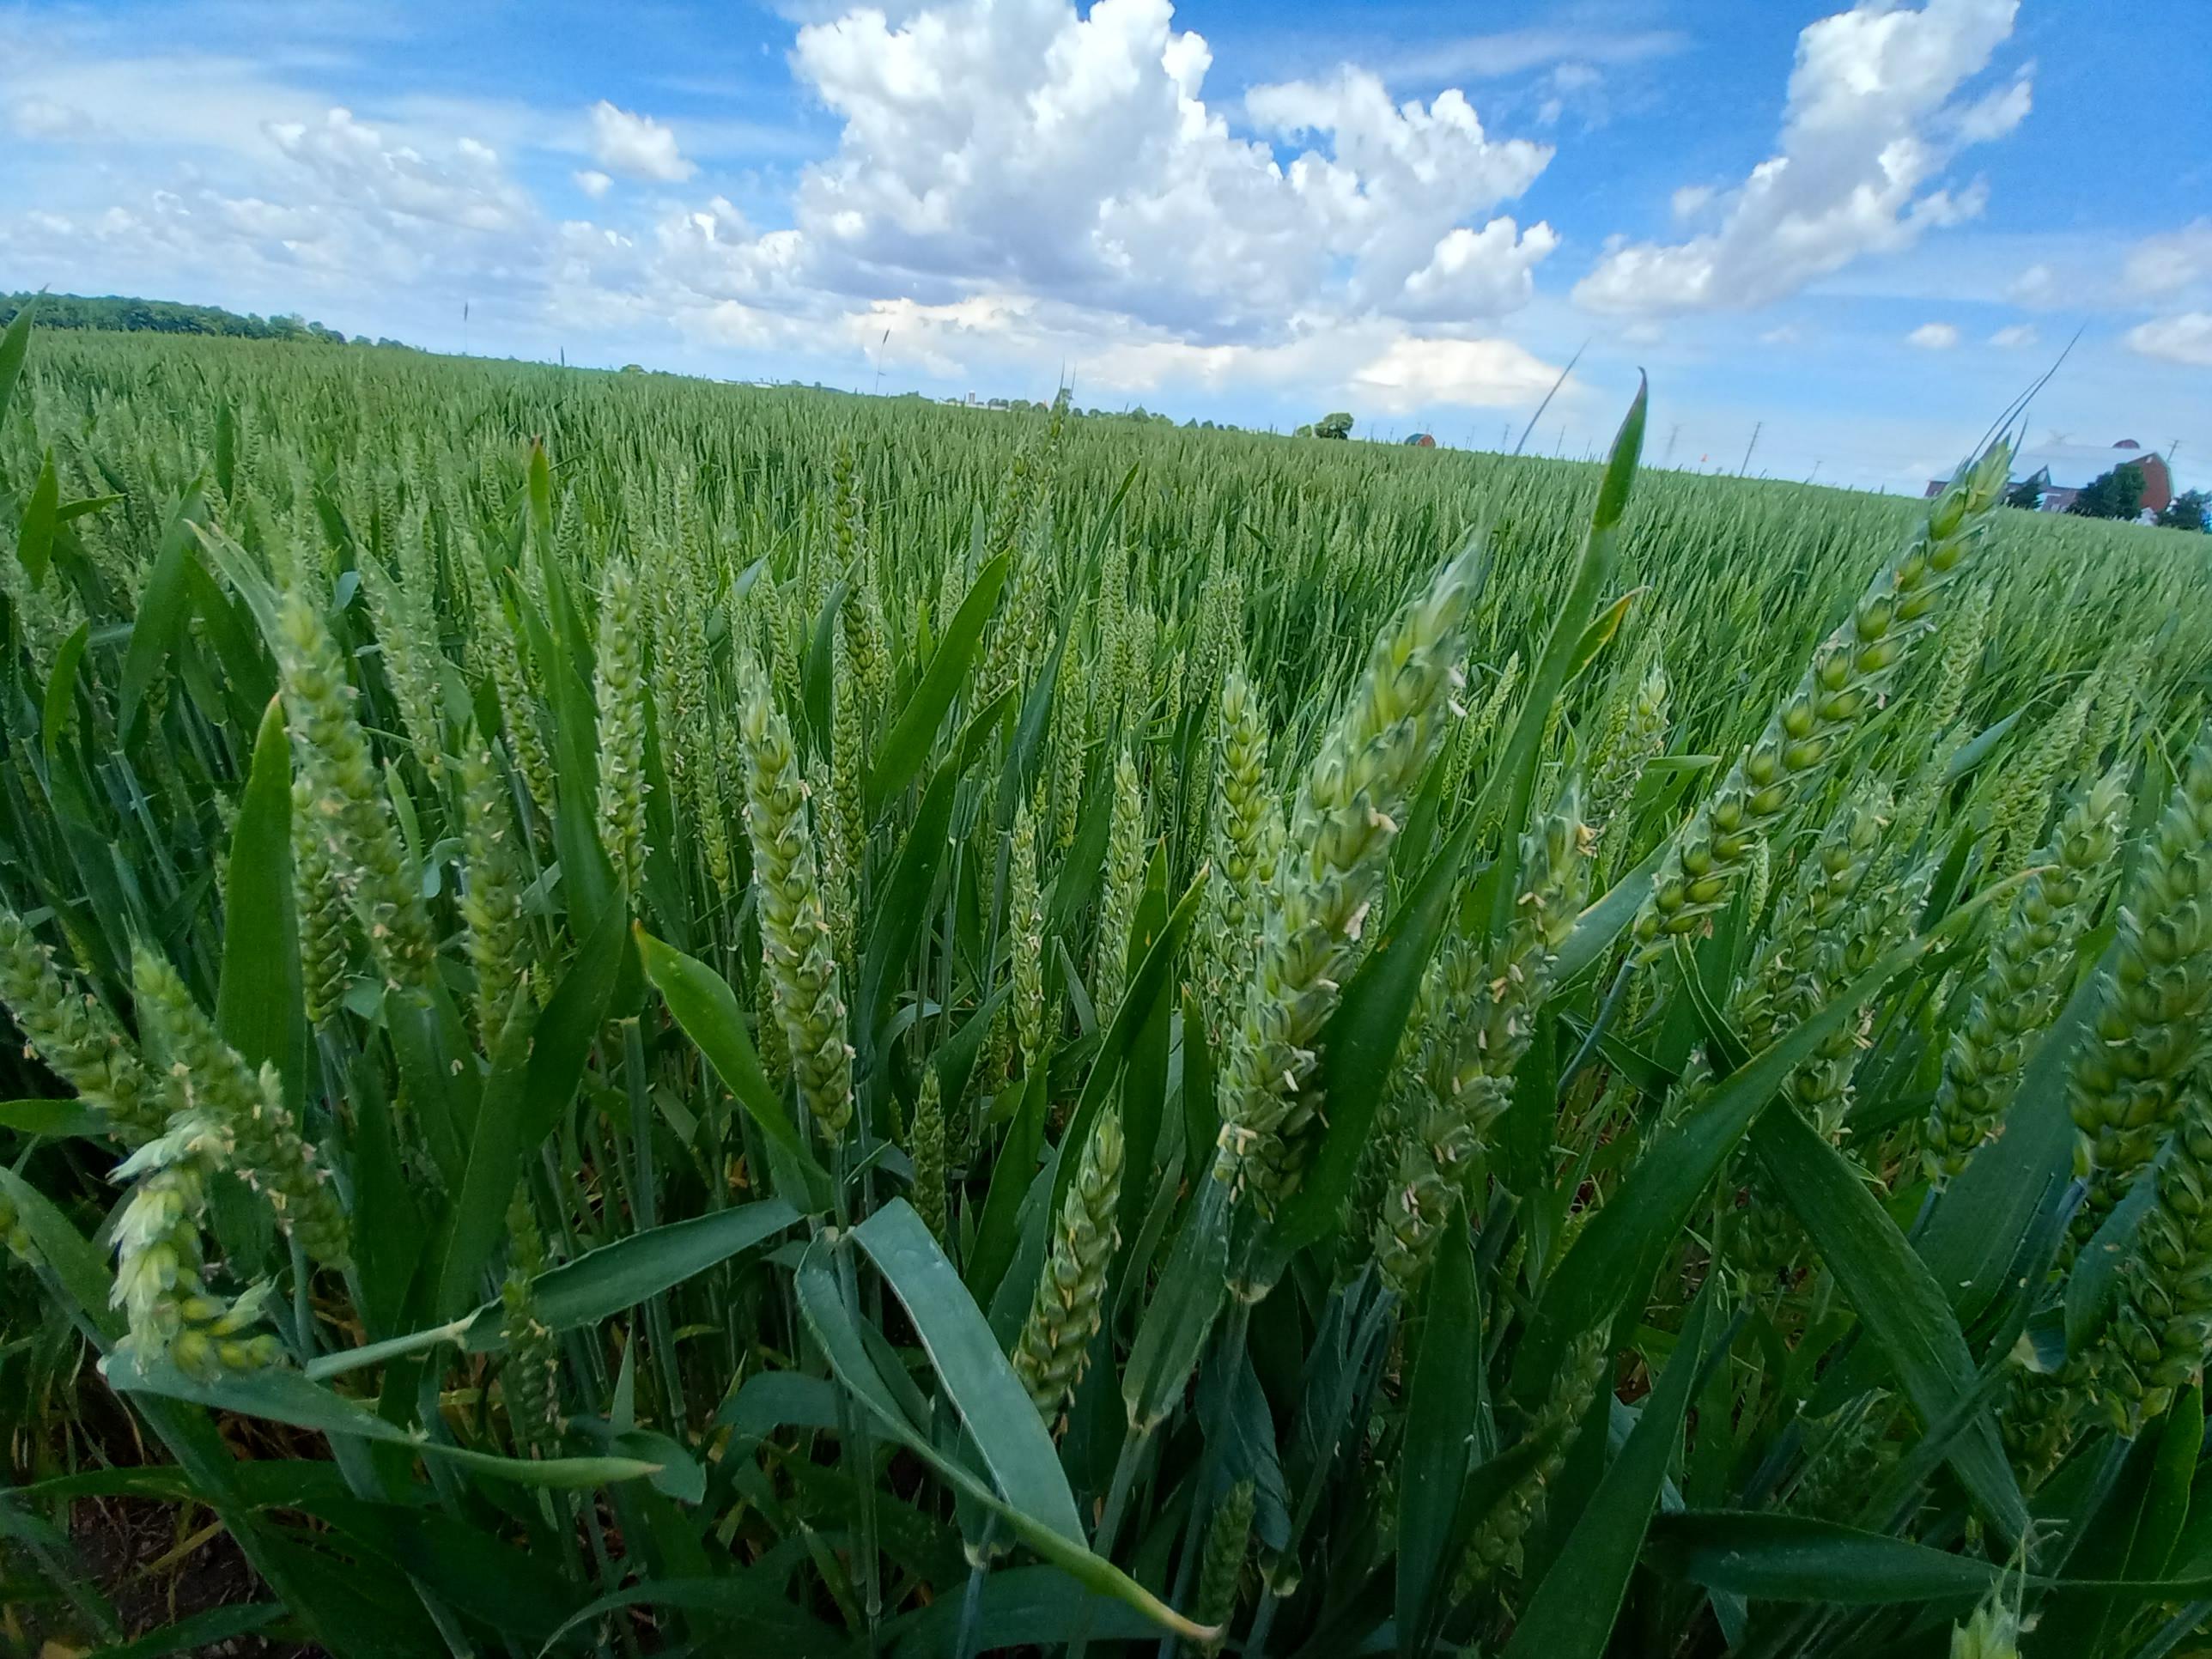 Wheat growing in a field.